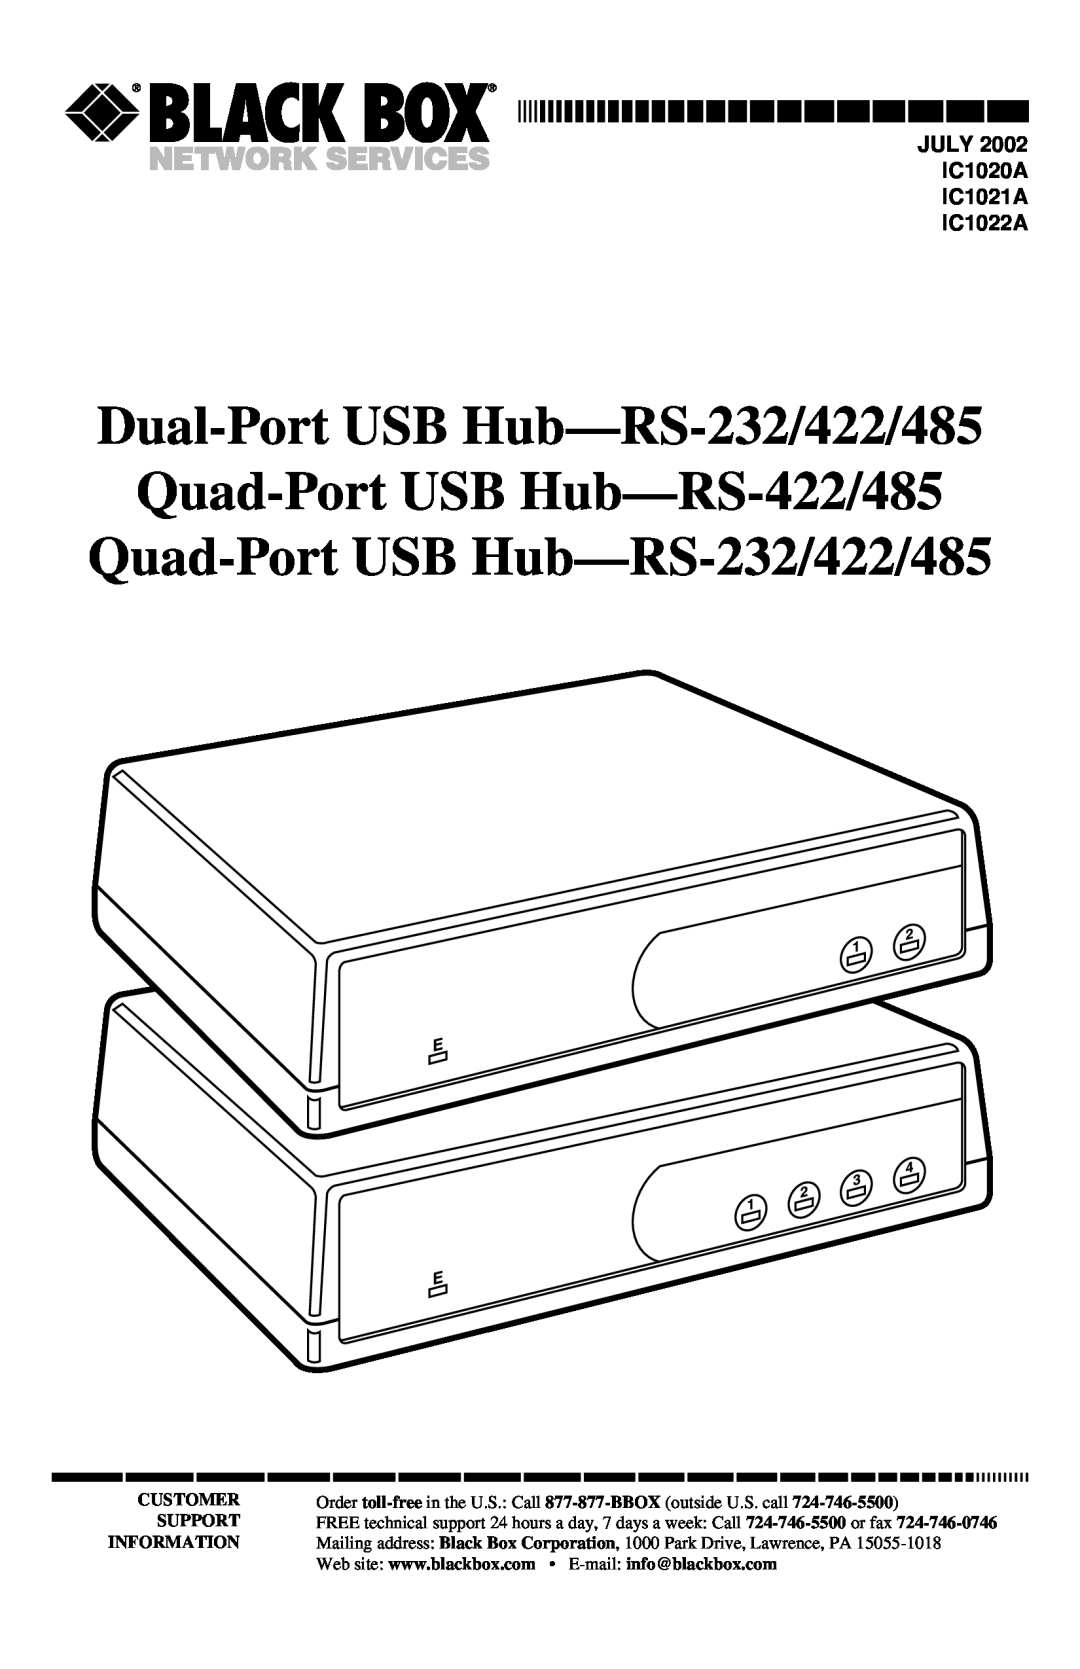 Black Box RS422/485 manual Dual-PortUSB Hub—RS-232/422/485, Quad-PortUSB Hub—RS-422/485, Quad-PortUSB Hub—RS-232/422/485 